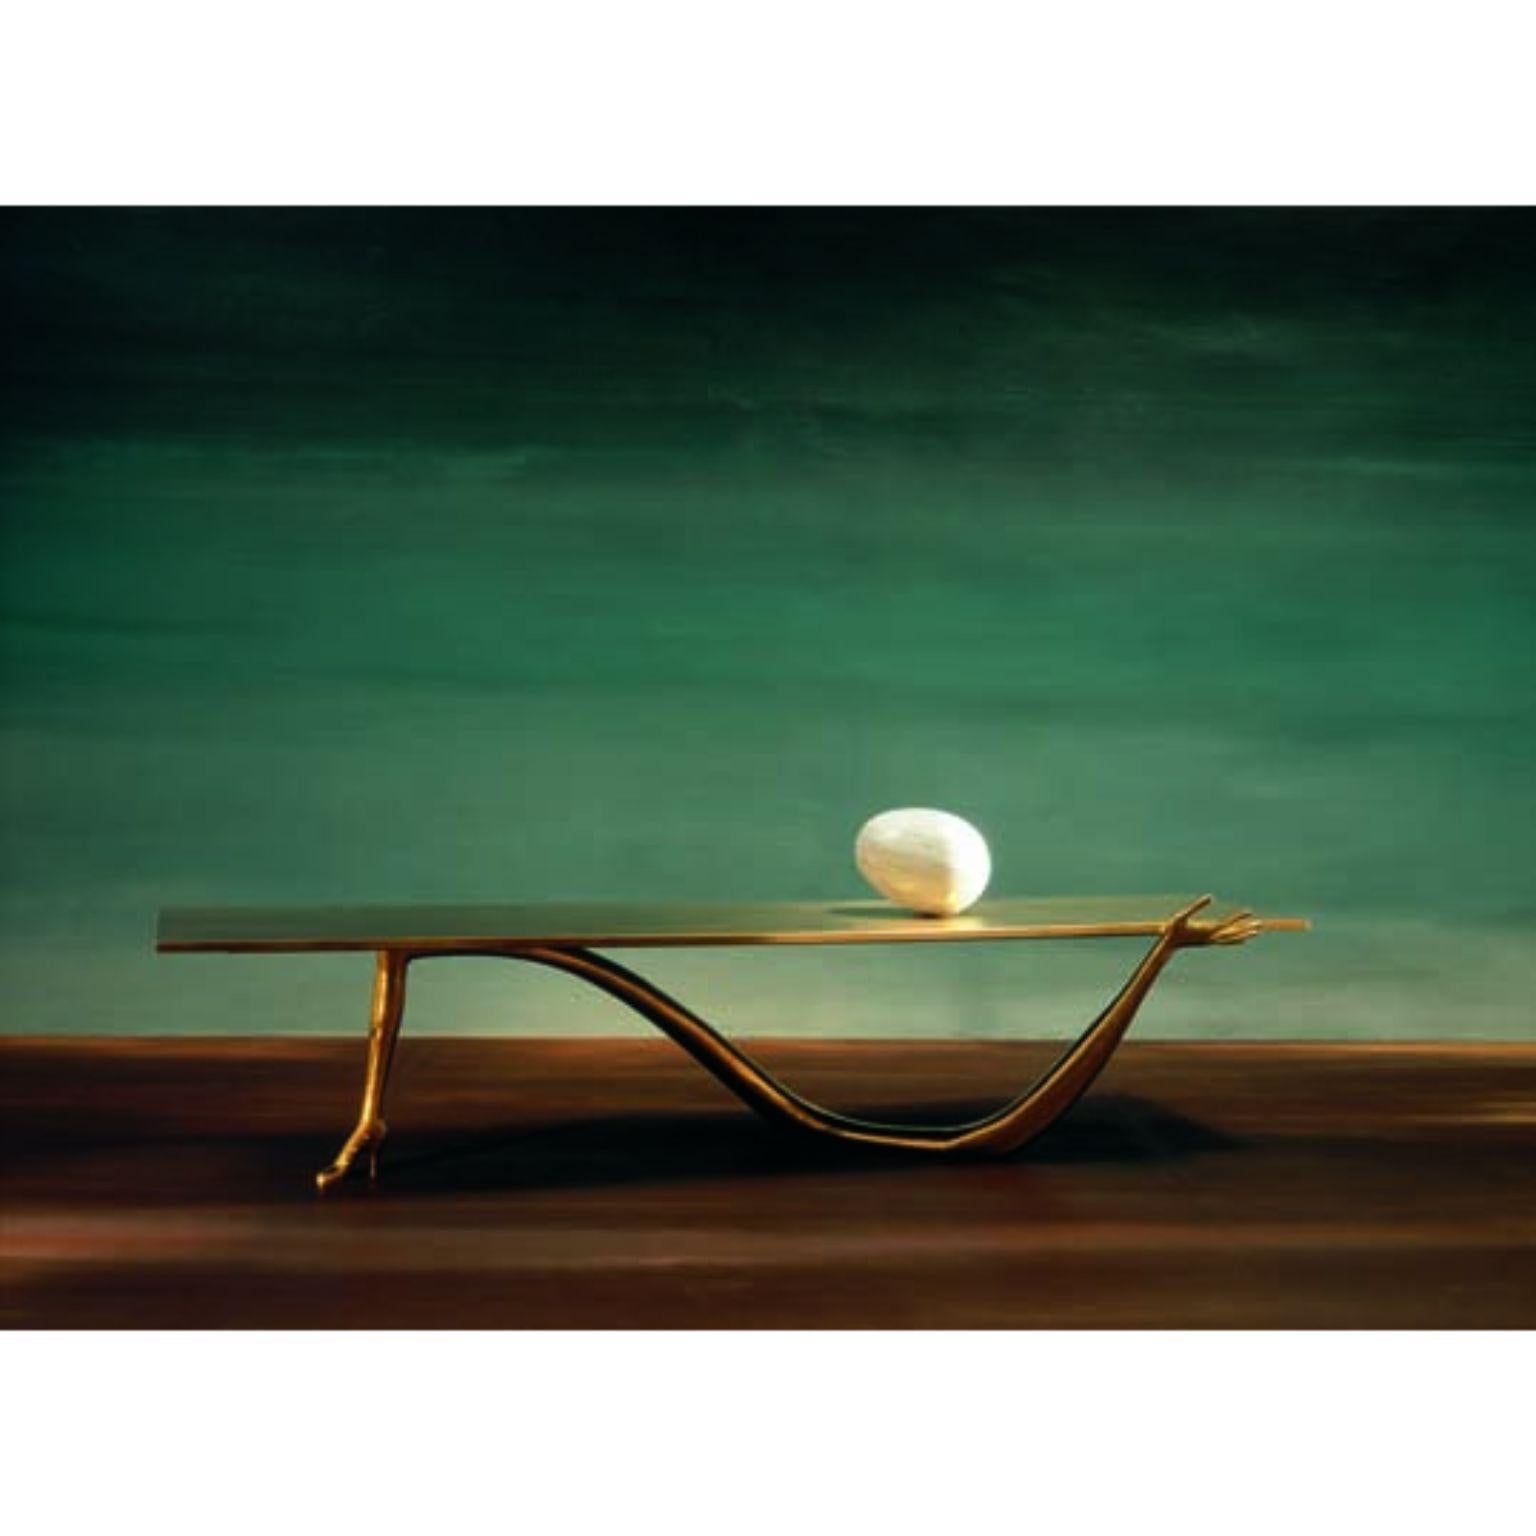 Leda low table, Salvador Dalí 
Design inspired on an artwork by Salvador Dalí
Dimensions: 51 x 190 x 61 H cm
Materials: brass, marble

Design inspired on an artwork by Salvador Dalí: ‘Femme à tête de roses’ (1935). 
Legs in cast varnished